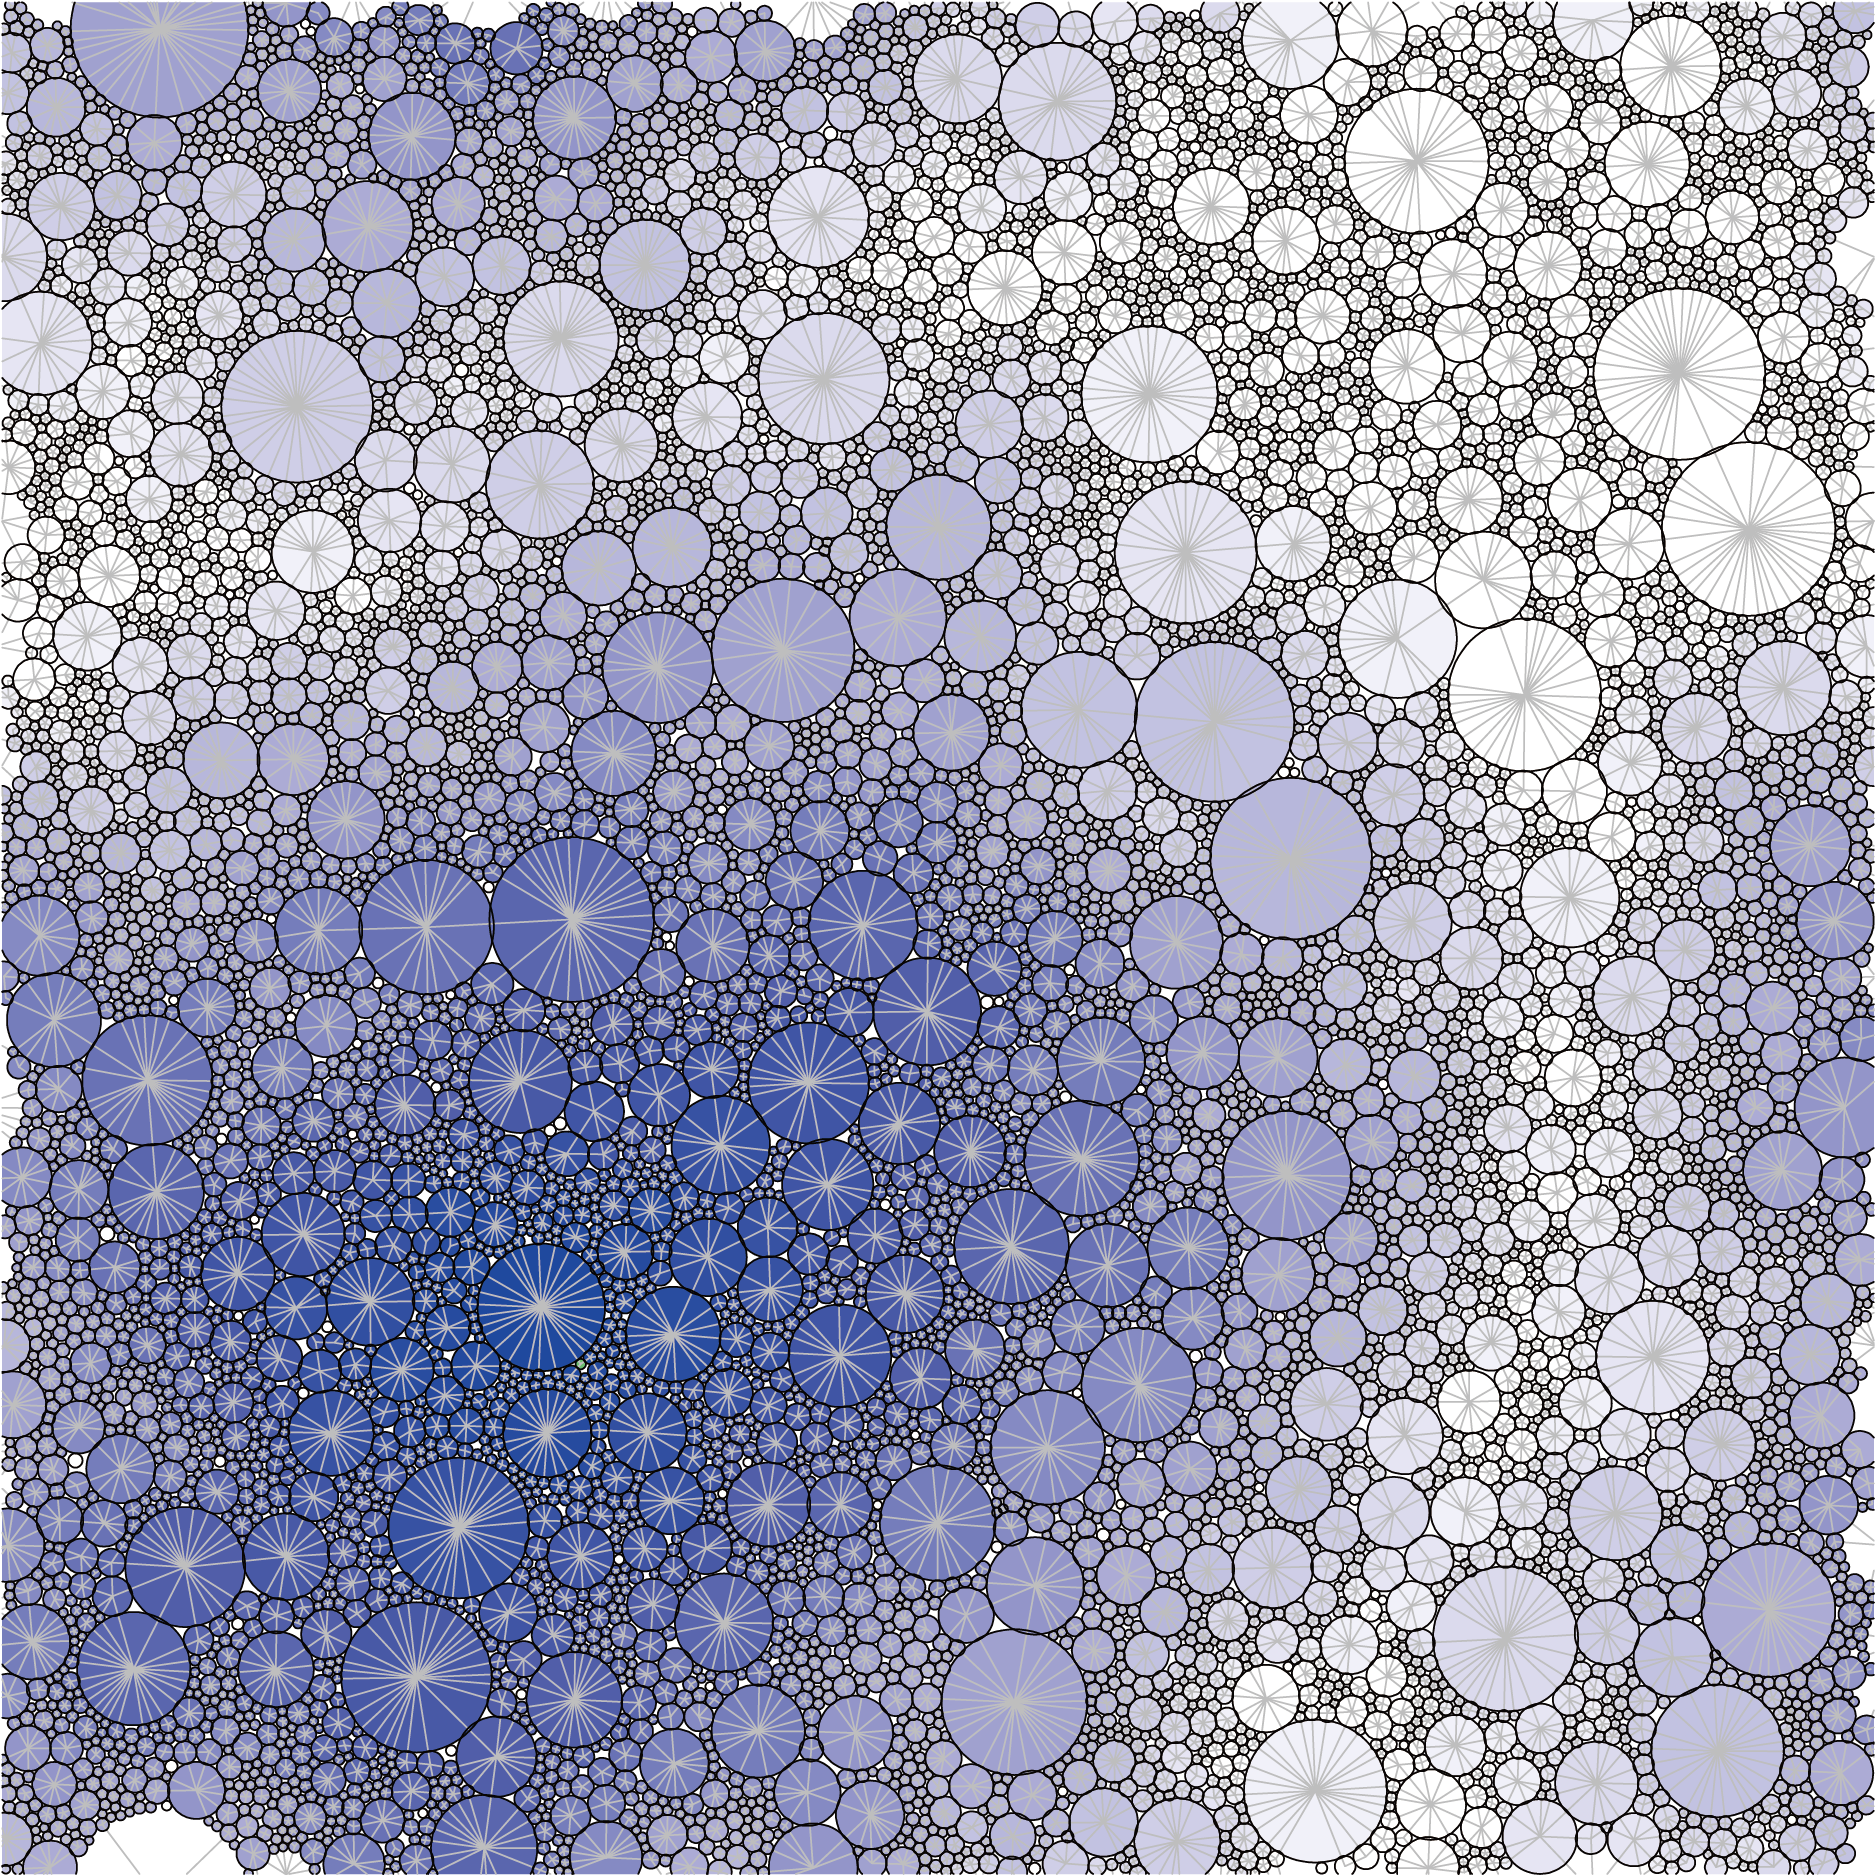 ジャミング転移した粒子系の数値シミュレーション。粒子の大きさ（粒径）が幅広く分布しているため、多分散性があると言われます。灰色の実線は粒子間に働く力のネットワークであり、粒子の色（青色）はある粒子からのネットワーク距離を表します。